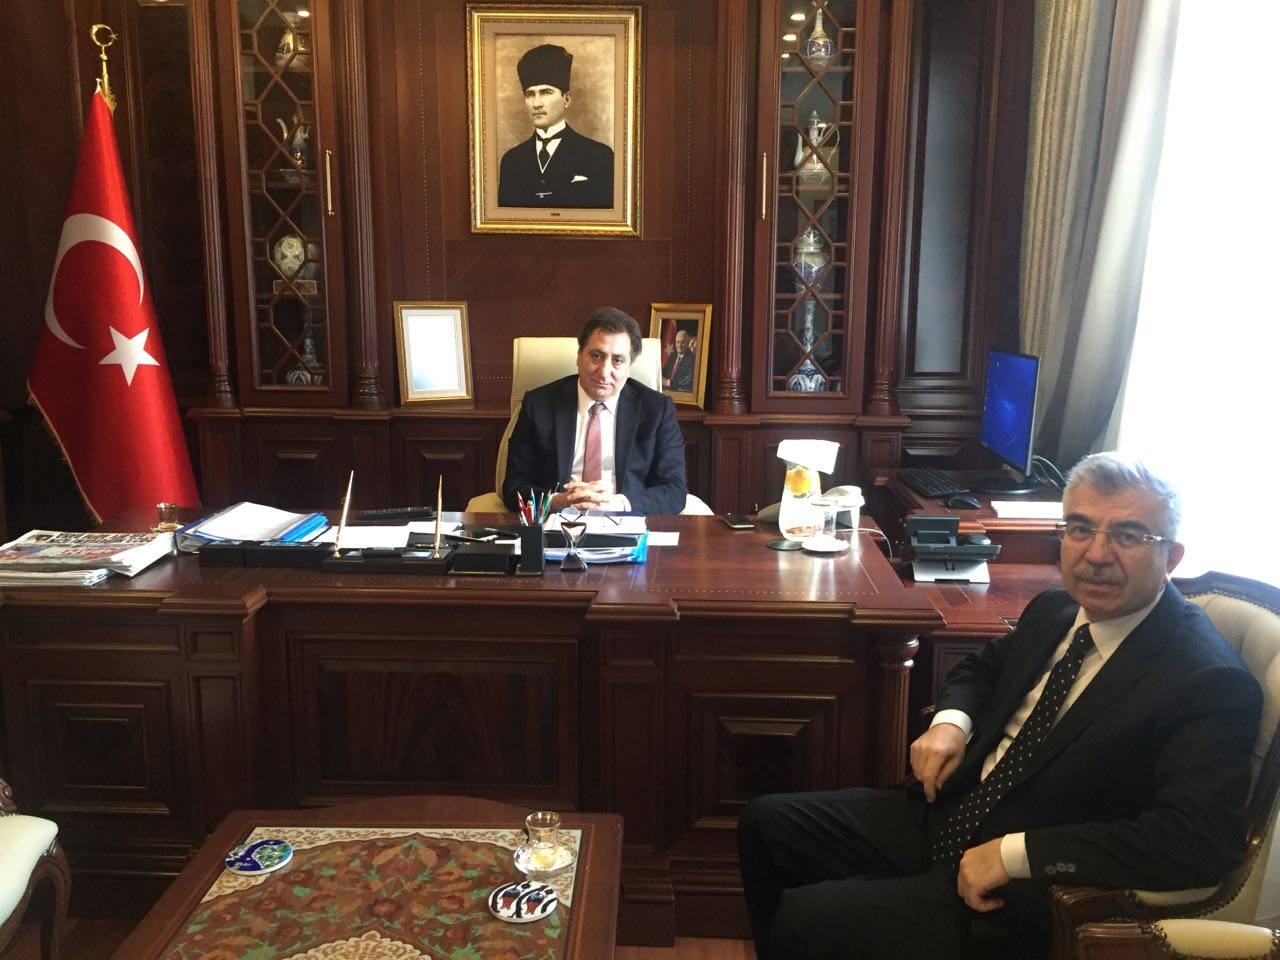  Dekan ARI, Bursa Valisi'ni ziyaret etti 